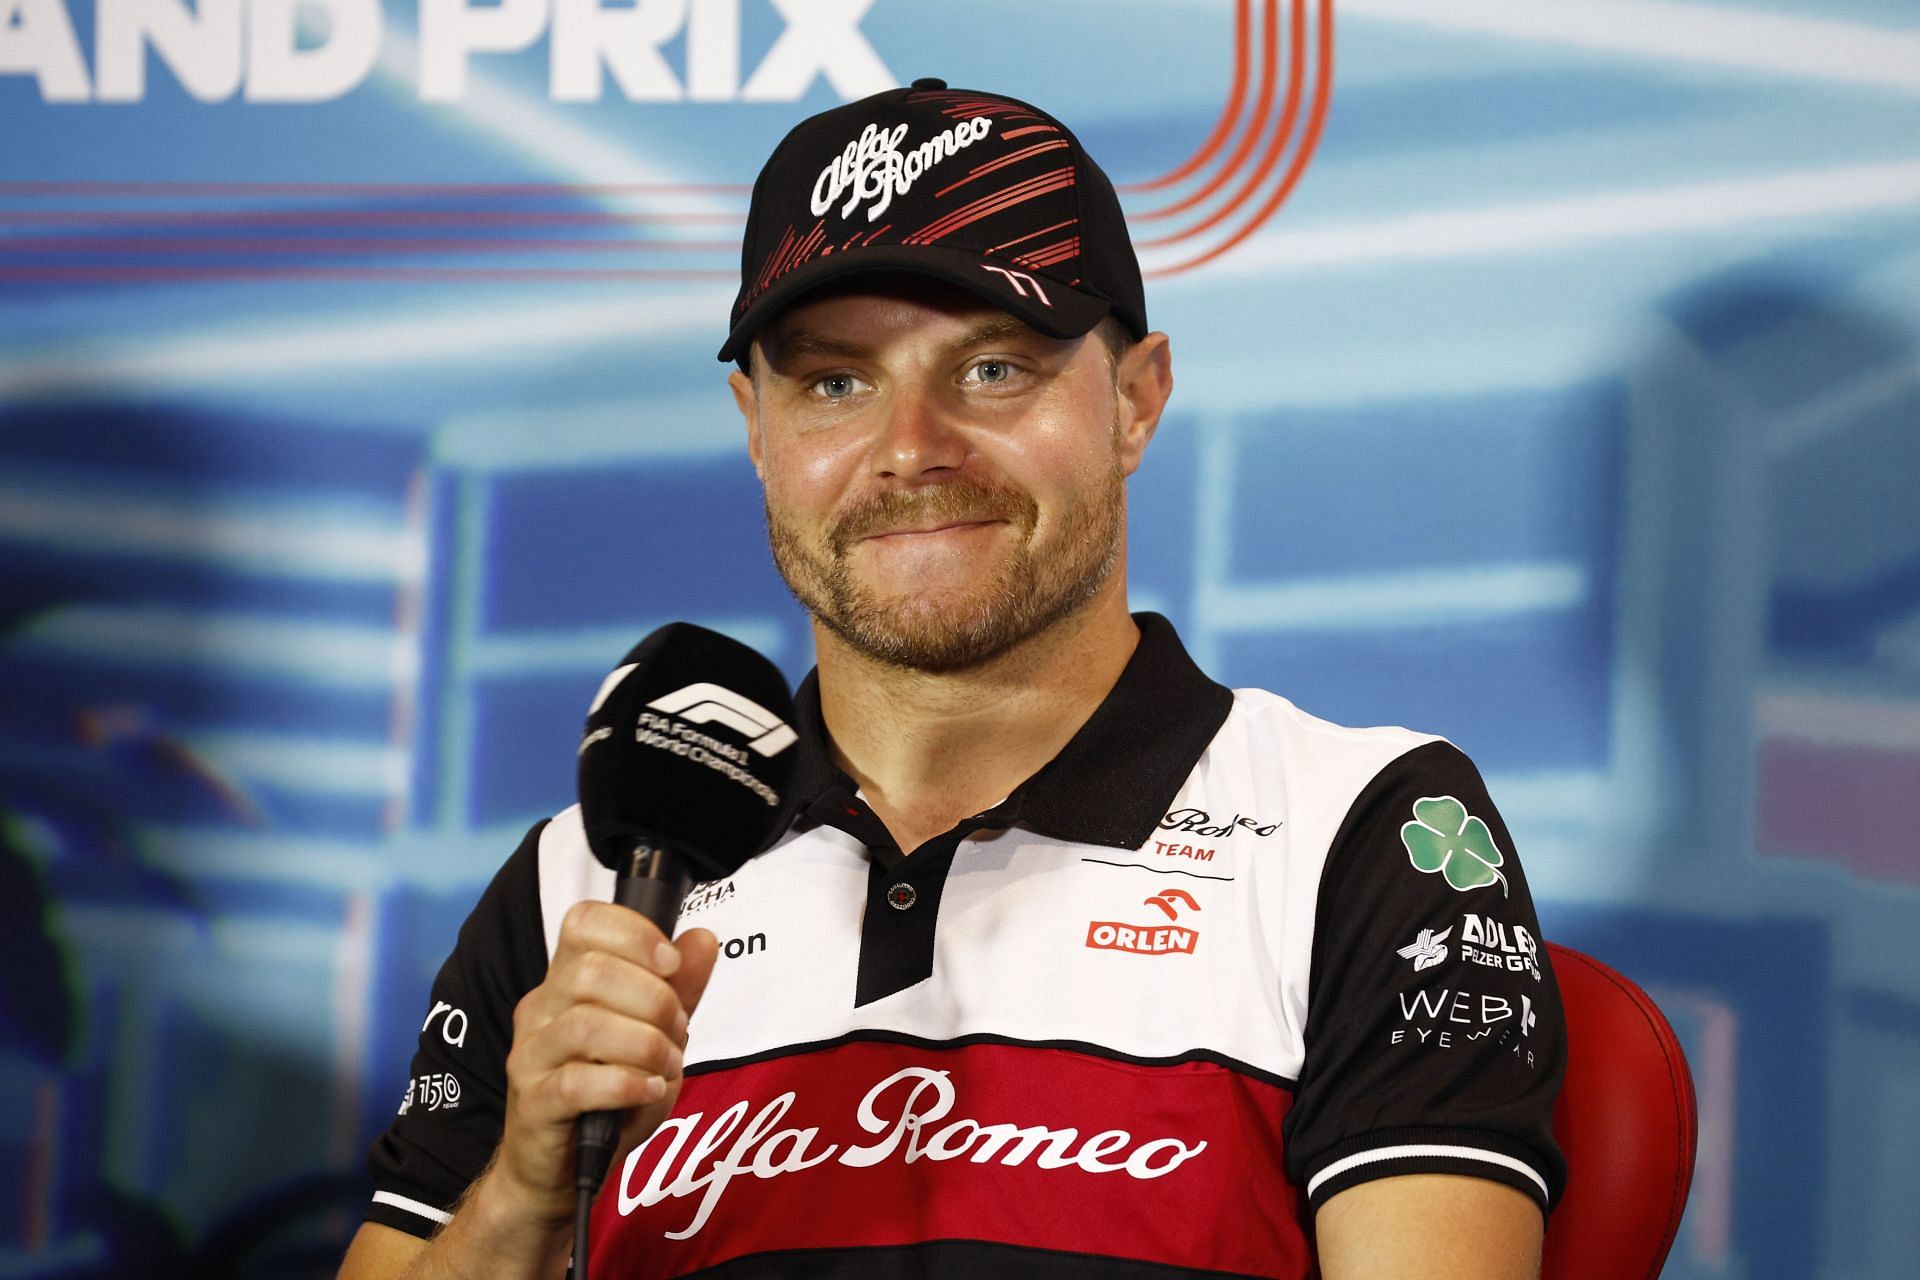 F1 Grand Prix of Miami - Practice - Valtteri Bottas talks to the press in Miami